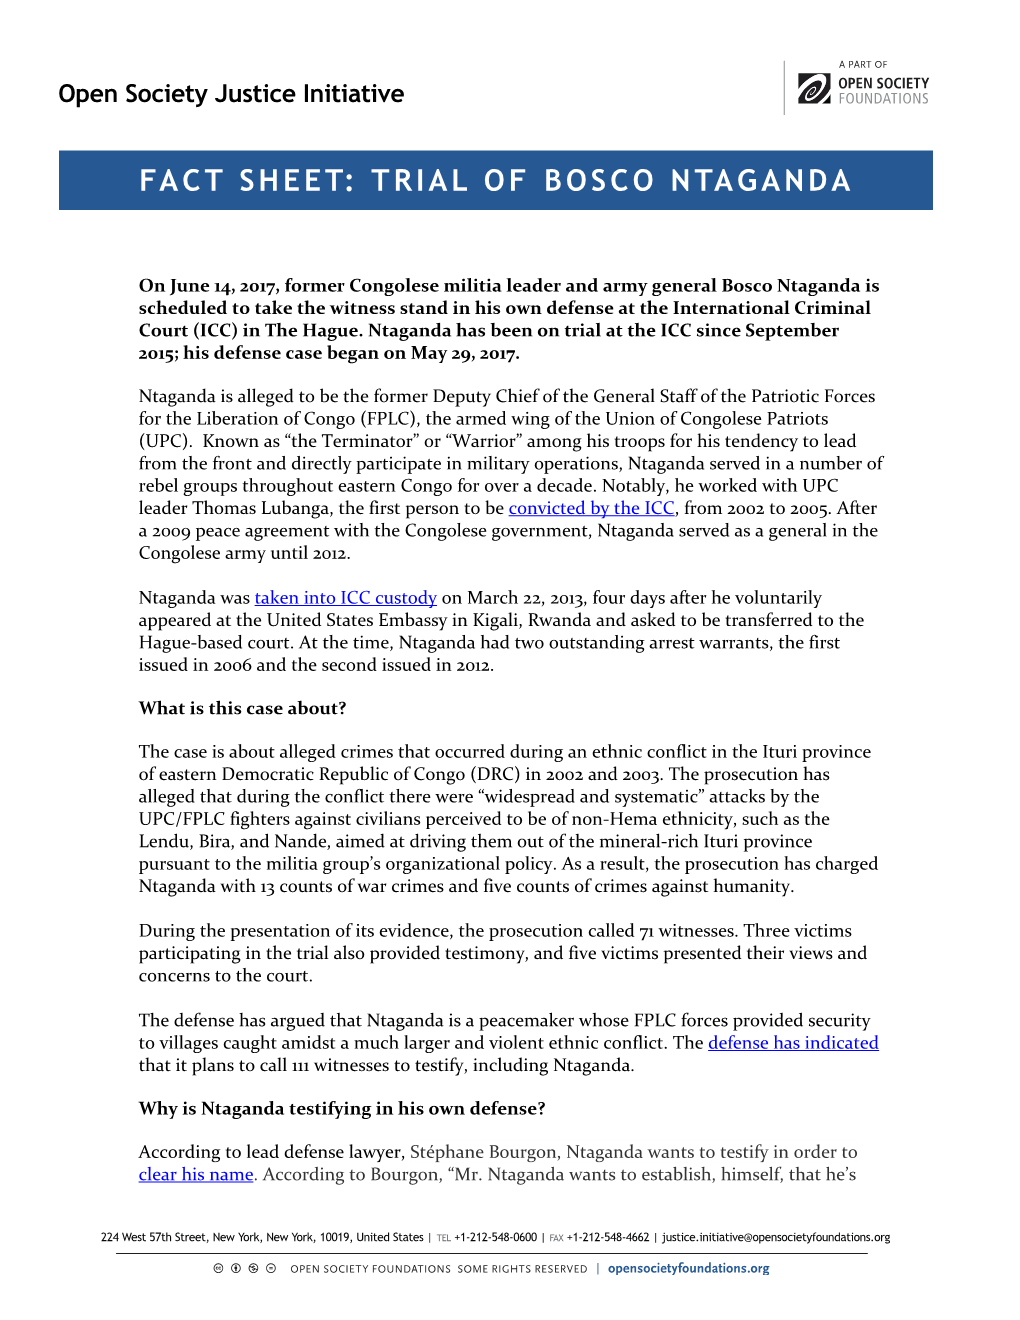 Fact Sheet: Trial of Bosco Ntaganda